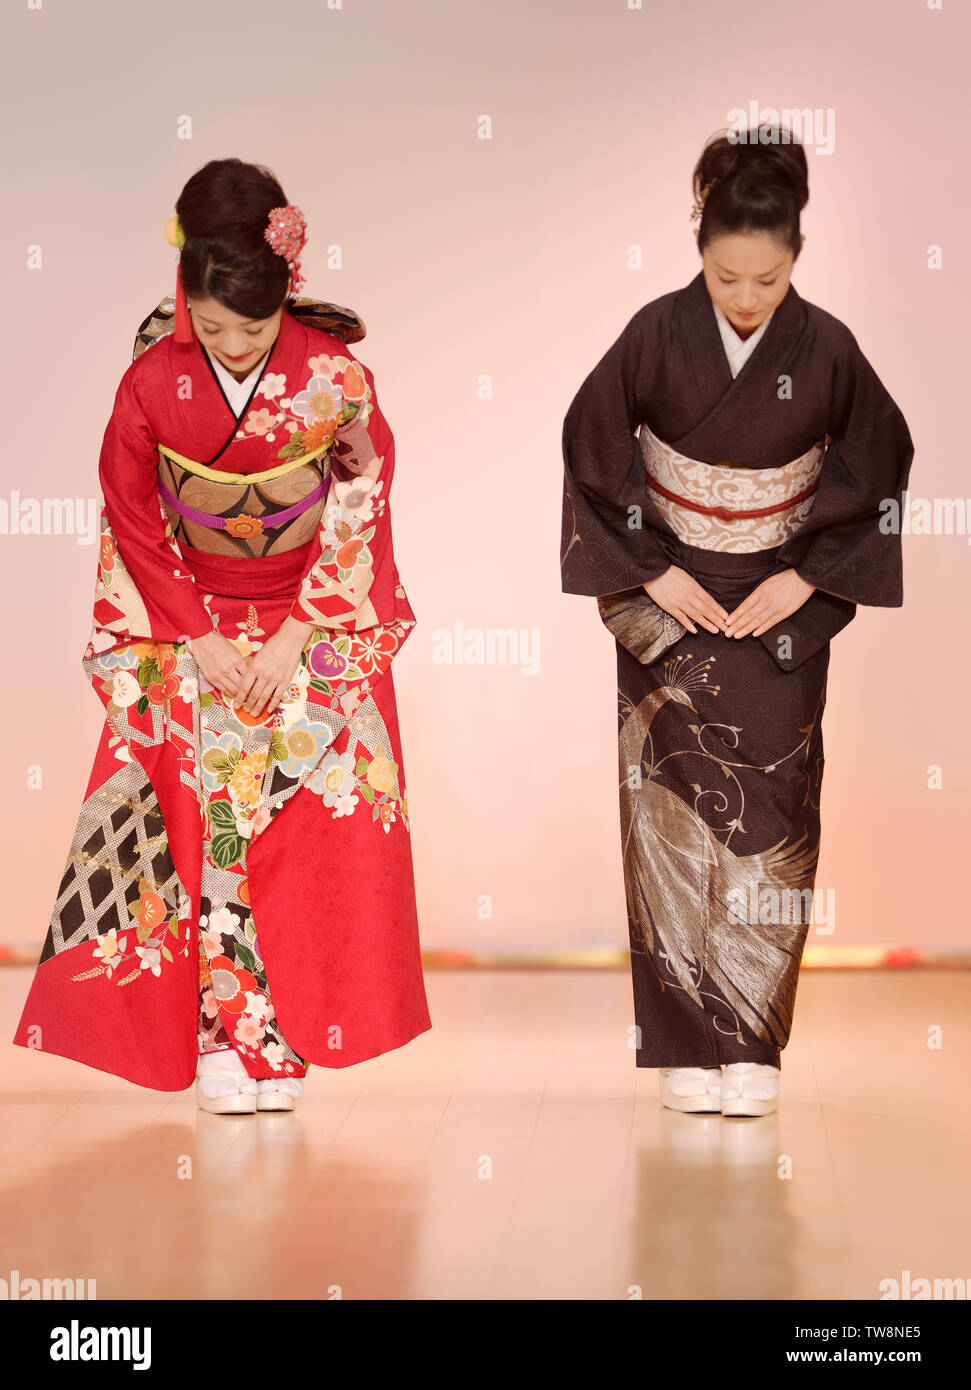 Licenza disponibile su MaximImages.com - donne giapponesi in elegante kimono rosso e nero che si inchinano ad una sfilata di moda a Kyoto, Giappone. Foto Stock